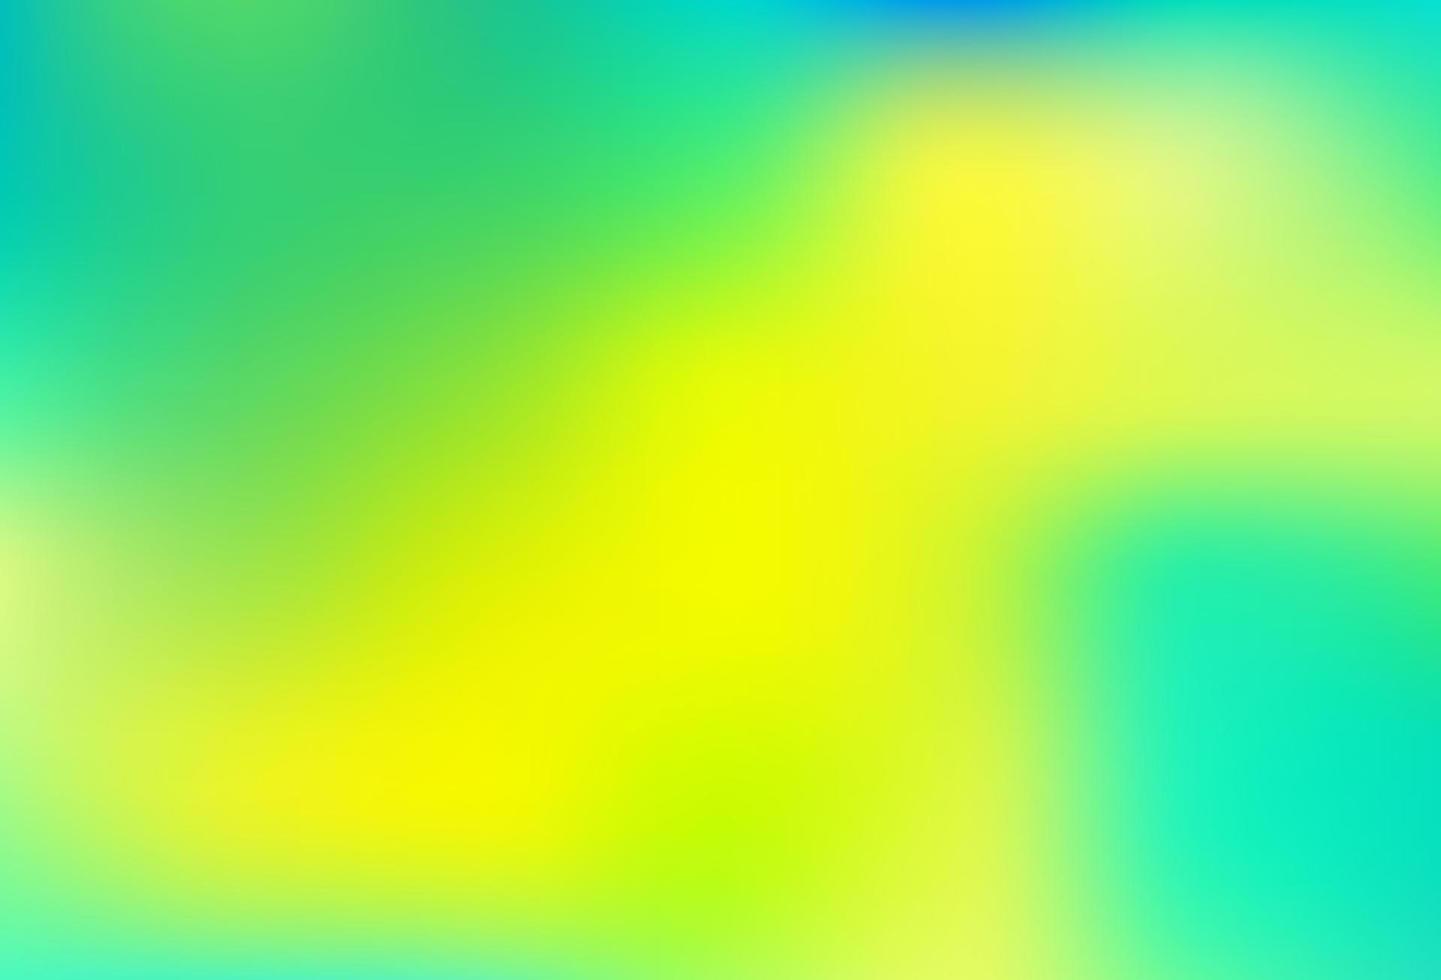 sfondo astratto lucido vettoriale blu chiaro, giallo.